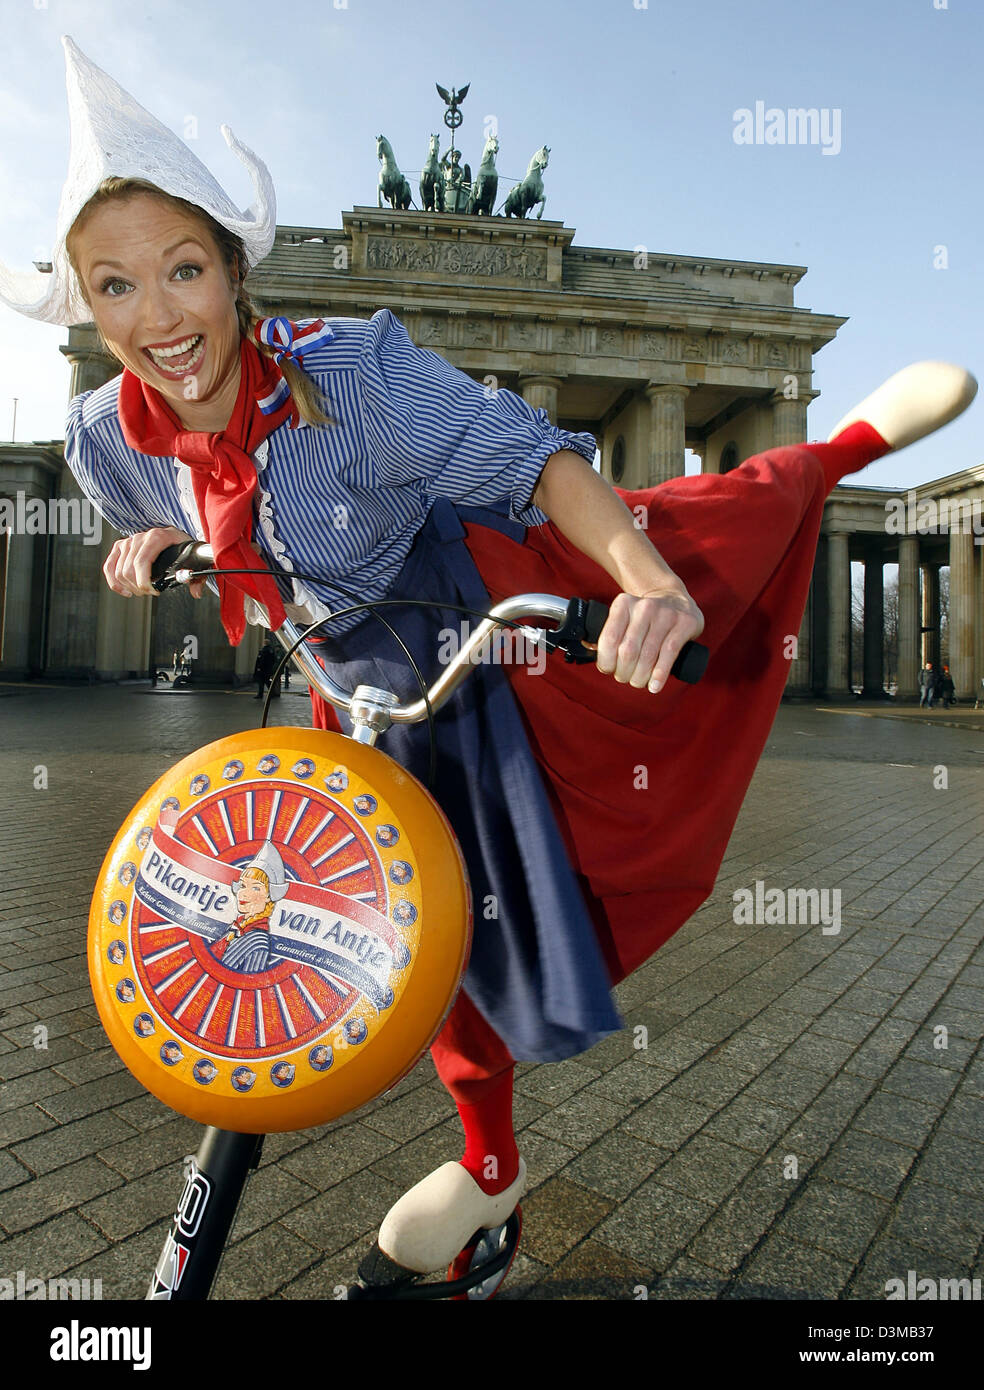 Dpa) - ein Modell gekleidet als die Werbung Persona Frau Antje "Frau Antje"  mit dem Fahrrad und einen Laib Käse vor dem Brandenburger Tor in Berlin,  Donnerstag, 12. Januar 2006 darstellt. Die